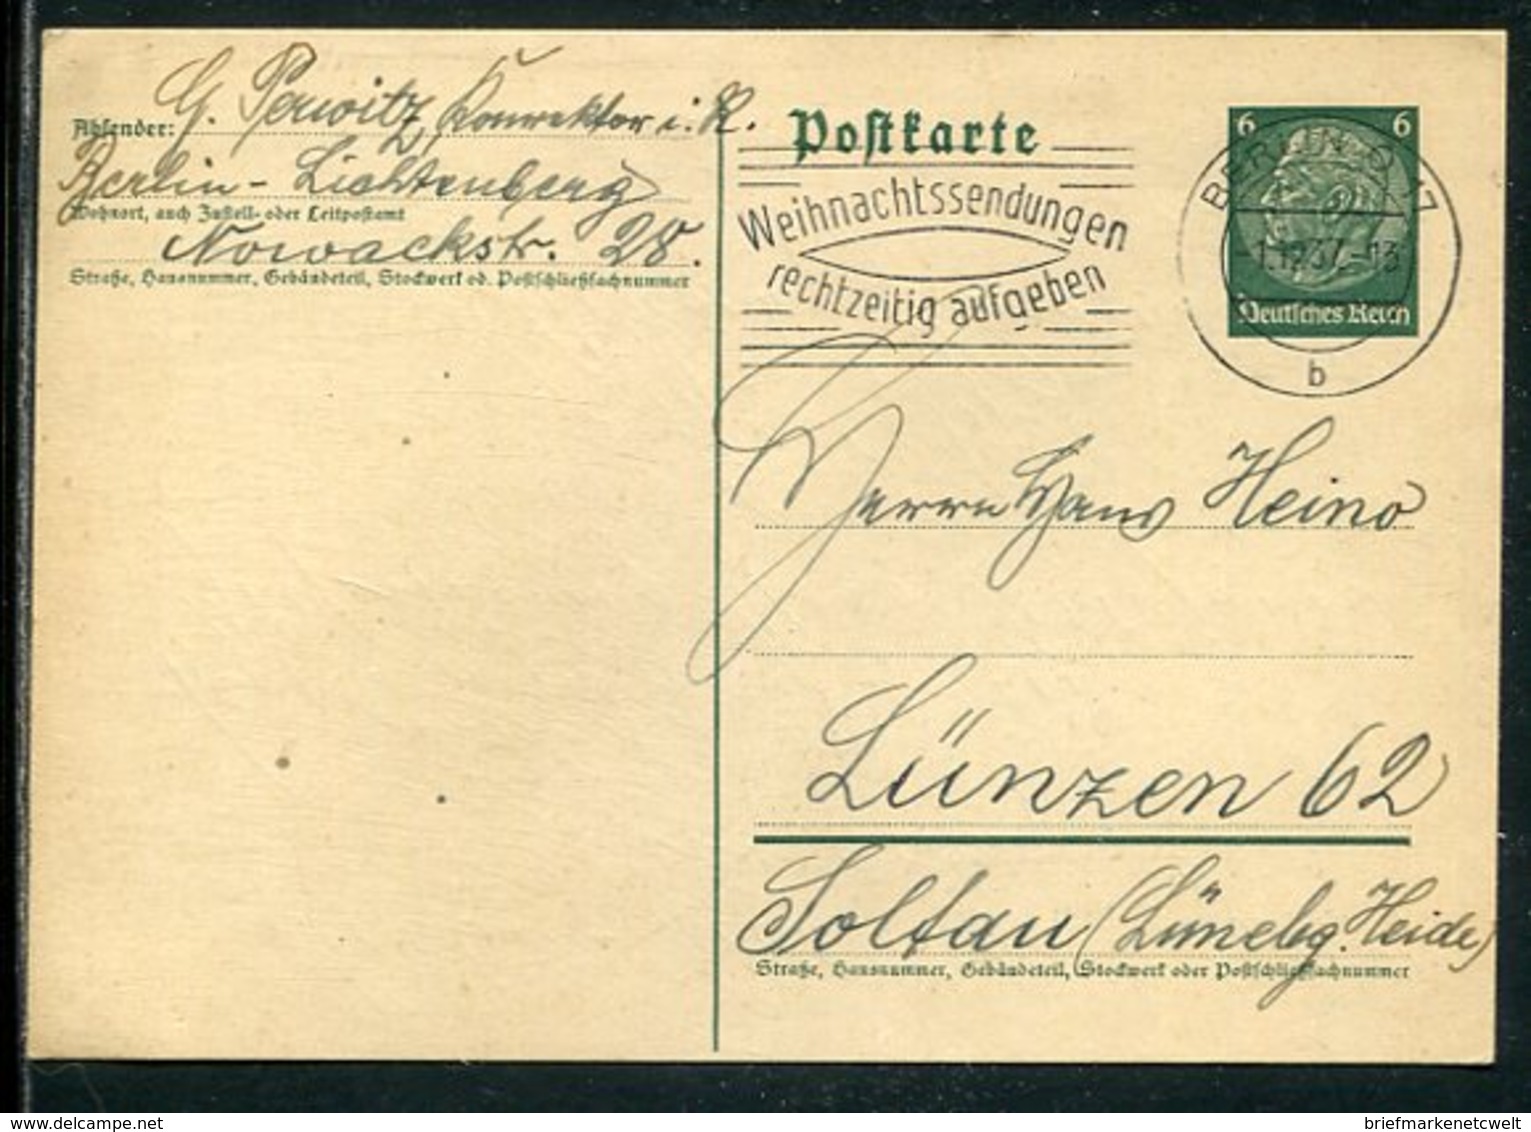 Deutsches Reich / 1937 / Masch.-Stempel Berlin "Weihnachtssendungen Rechtzeitig Aufgeben" Auf Postkarte (5/163) - Maschinenstempel (EMA)